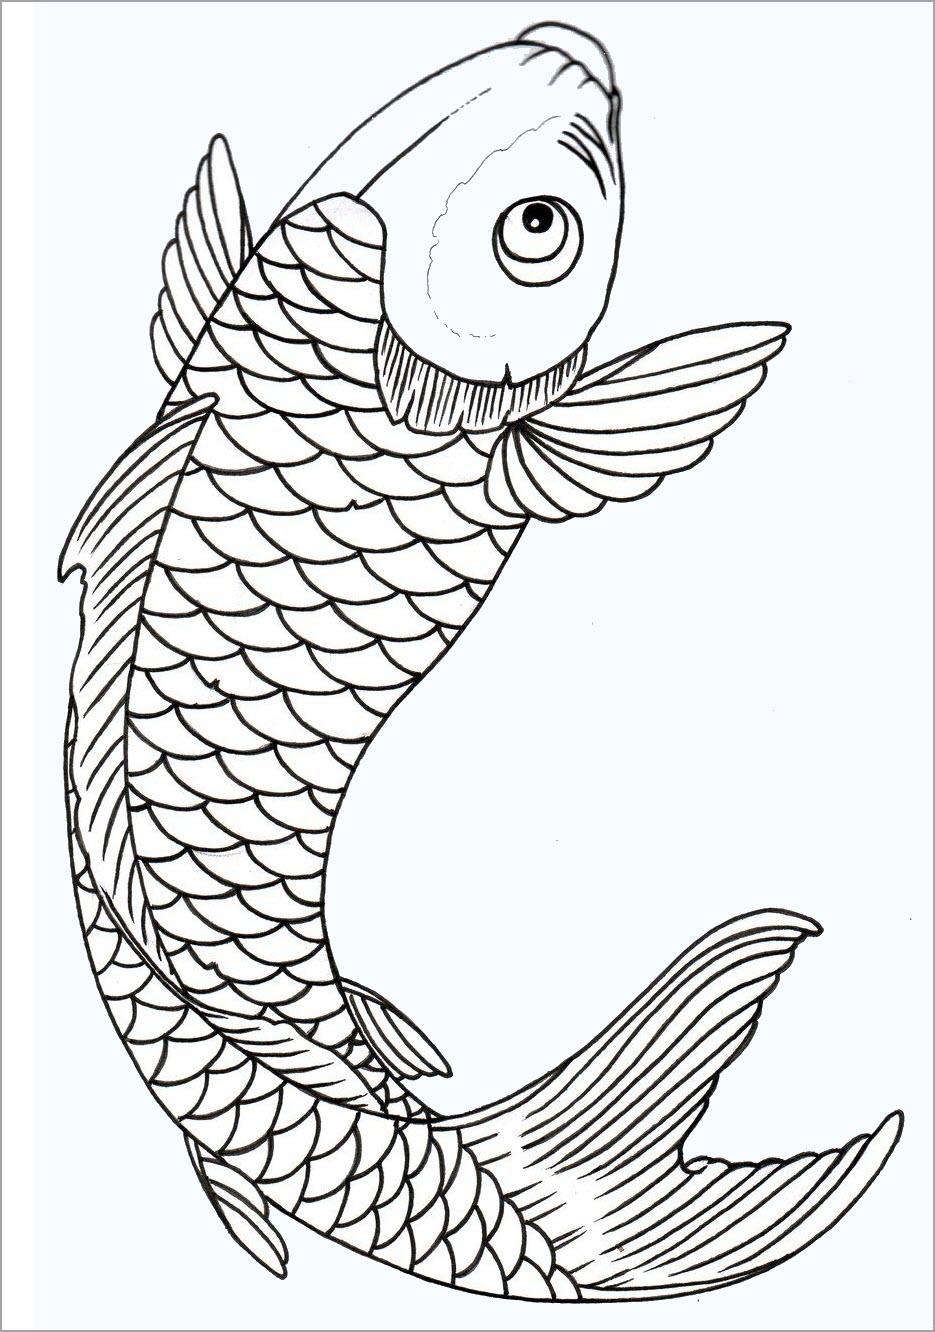 Xem hơn 100 ảnh về hình vẽ cá chép hoa sen  NEC